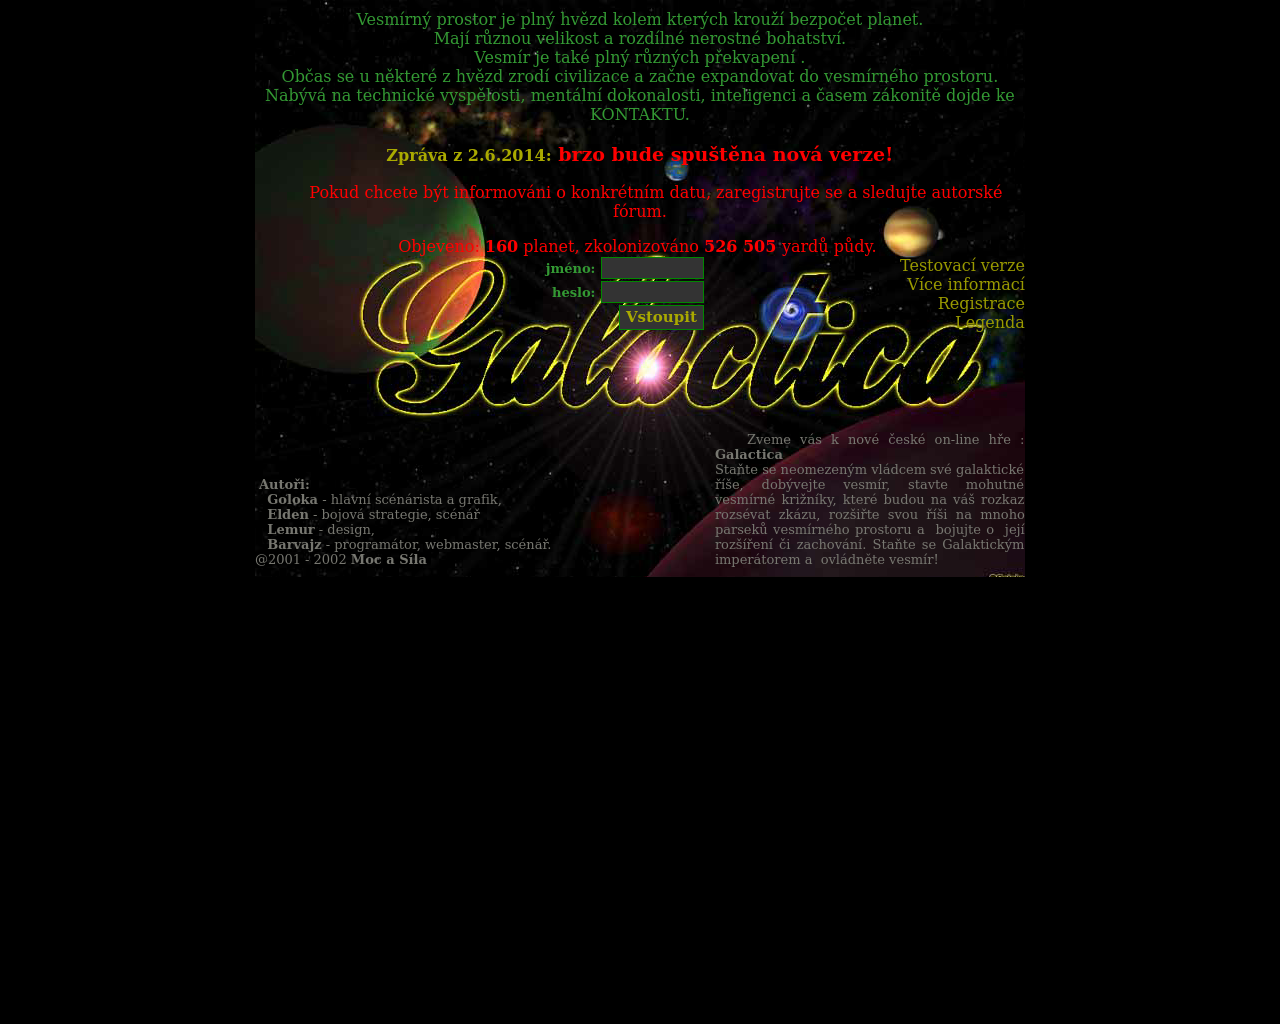 Site Image galactica.cz v 1280x1024